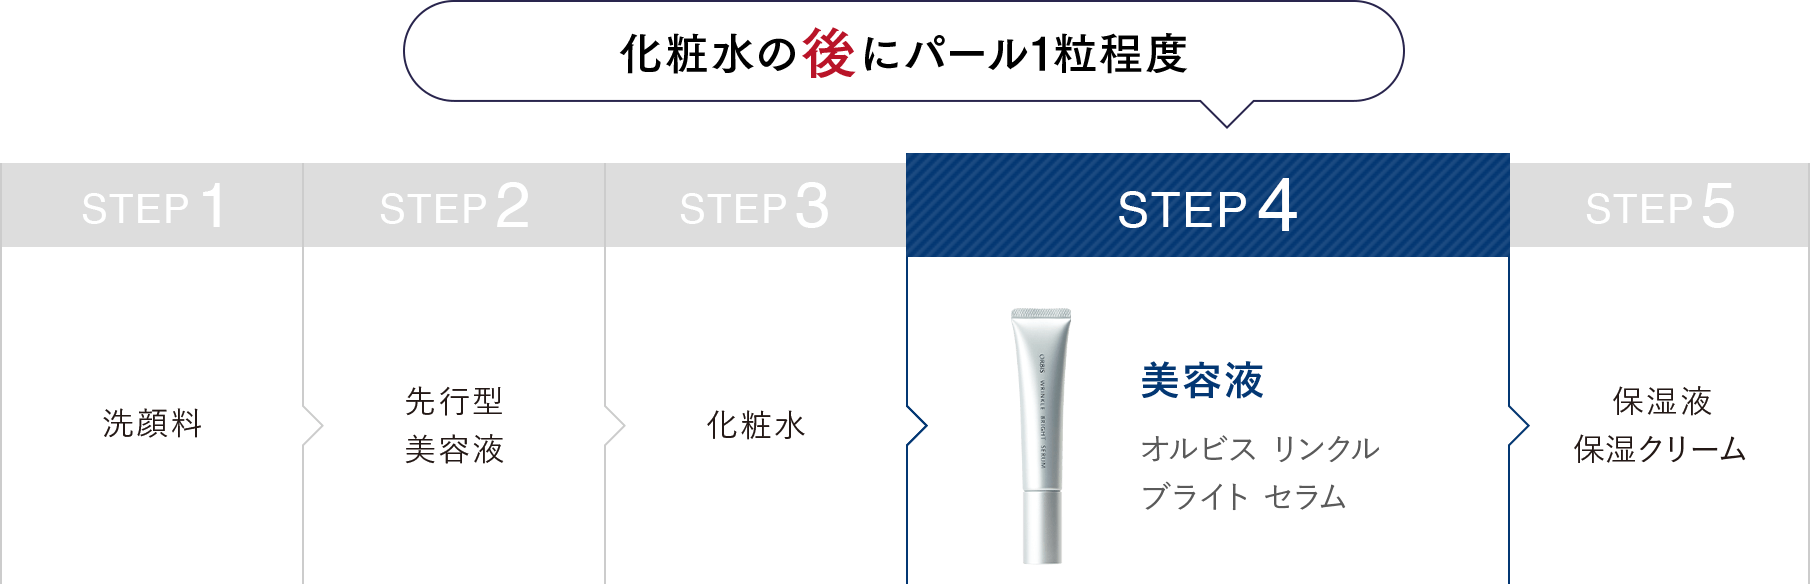 化粧水の後にパール1粒程度 STEP1:洗顔料 STEP2:先行型美容液 STEP3:化粧水 STEP4:美容液オルビスリンクルブライトセラム STEP5:保湿液・保湿クリーム